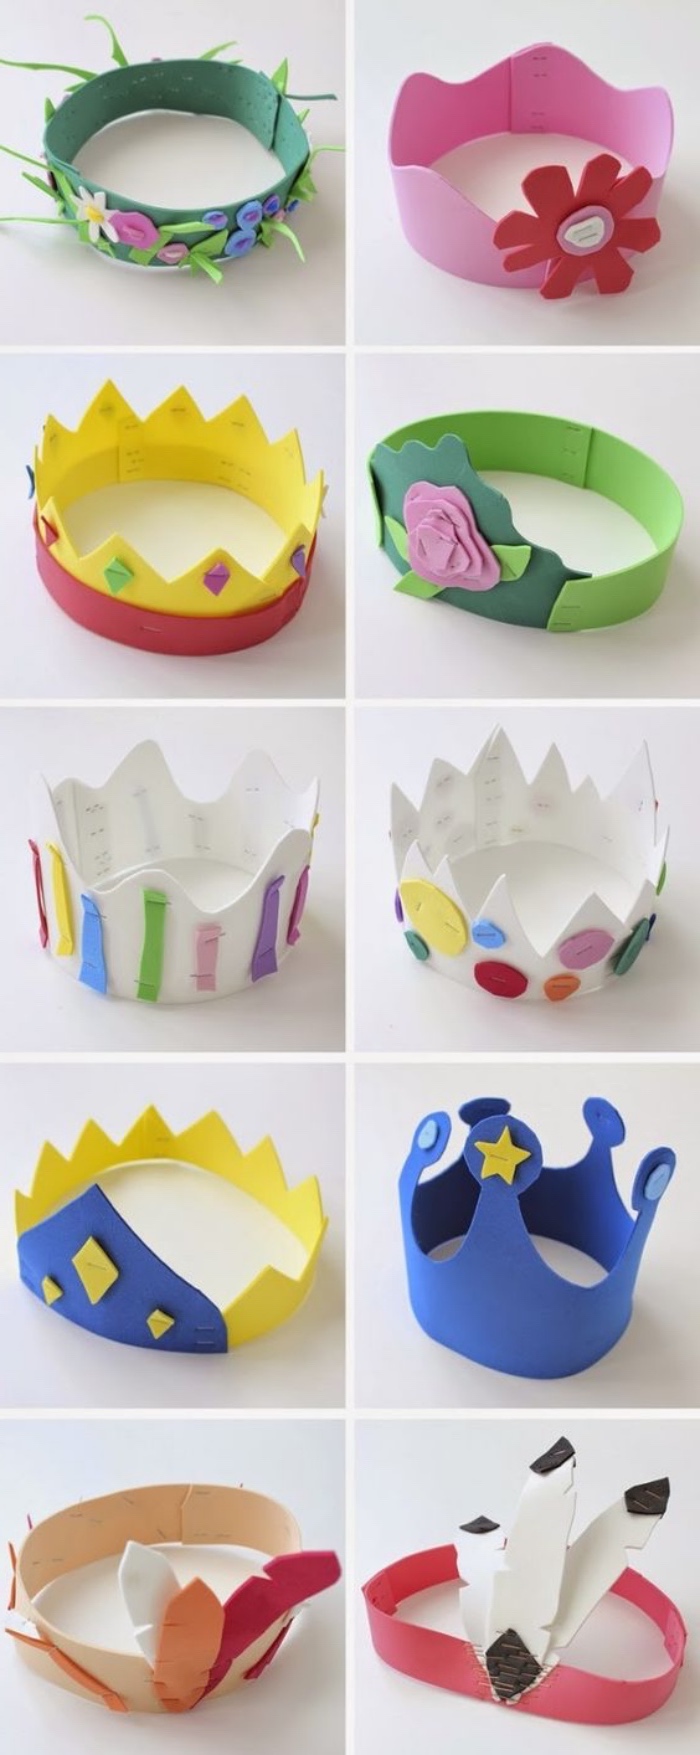 mini coronas hechas de papel, manualidades de papel para niños pequeños, manualidades faciles para niños originales 